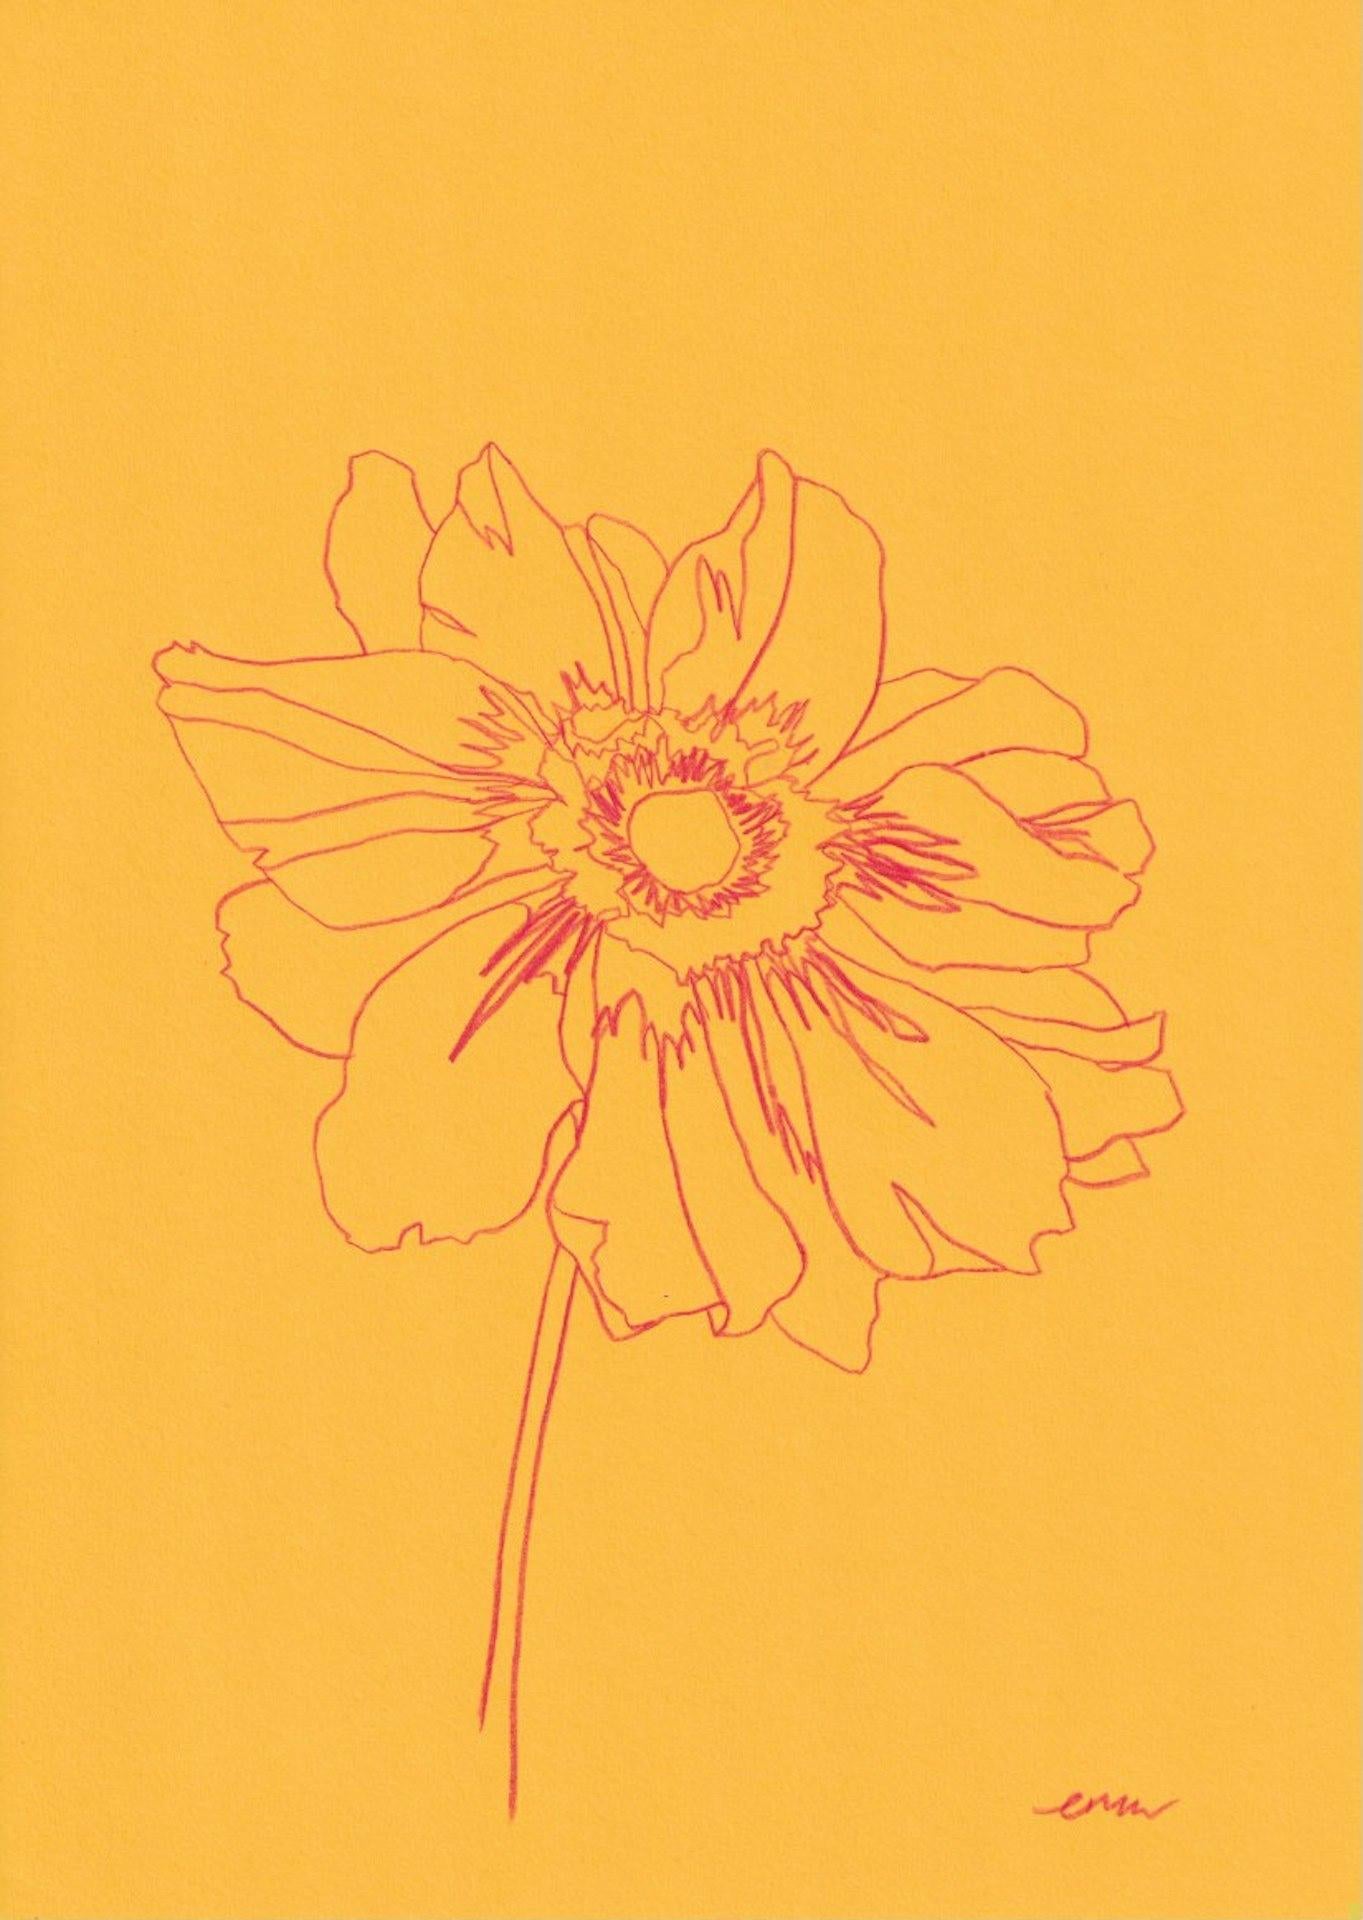 Ellen Williams
Anemone II
Originalzeichnung
Bleistift auf 150gsm Papier
Ungerahmt verkauft
(Bitte beachten Sie, dass die Bilder vor Ort nur ein Hinweis darauf sind, wie ein Stück aussehen könnte).

Diese Zeichnung gehört zu einer Serie von